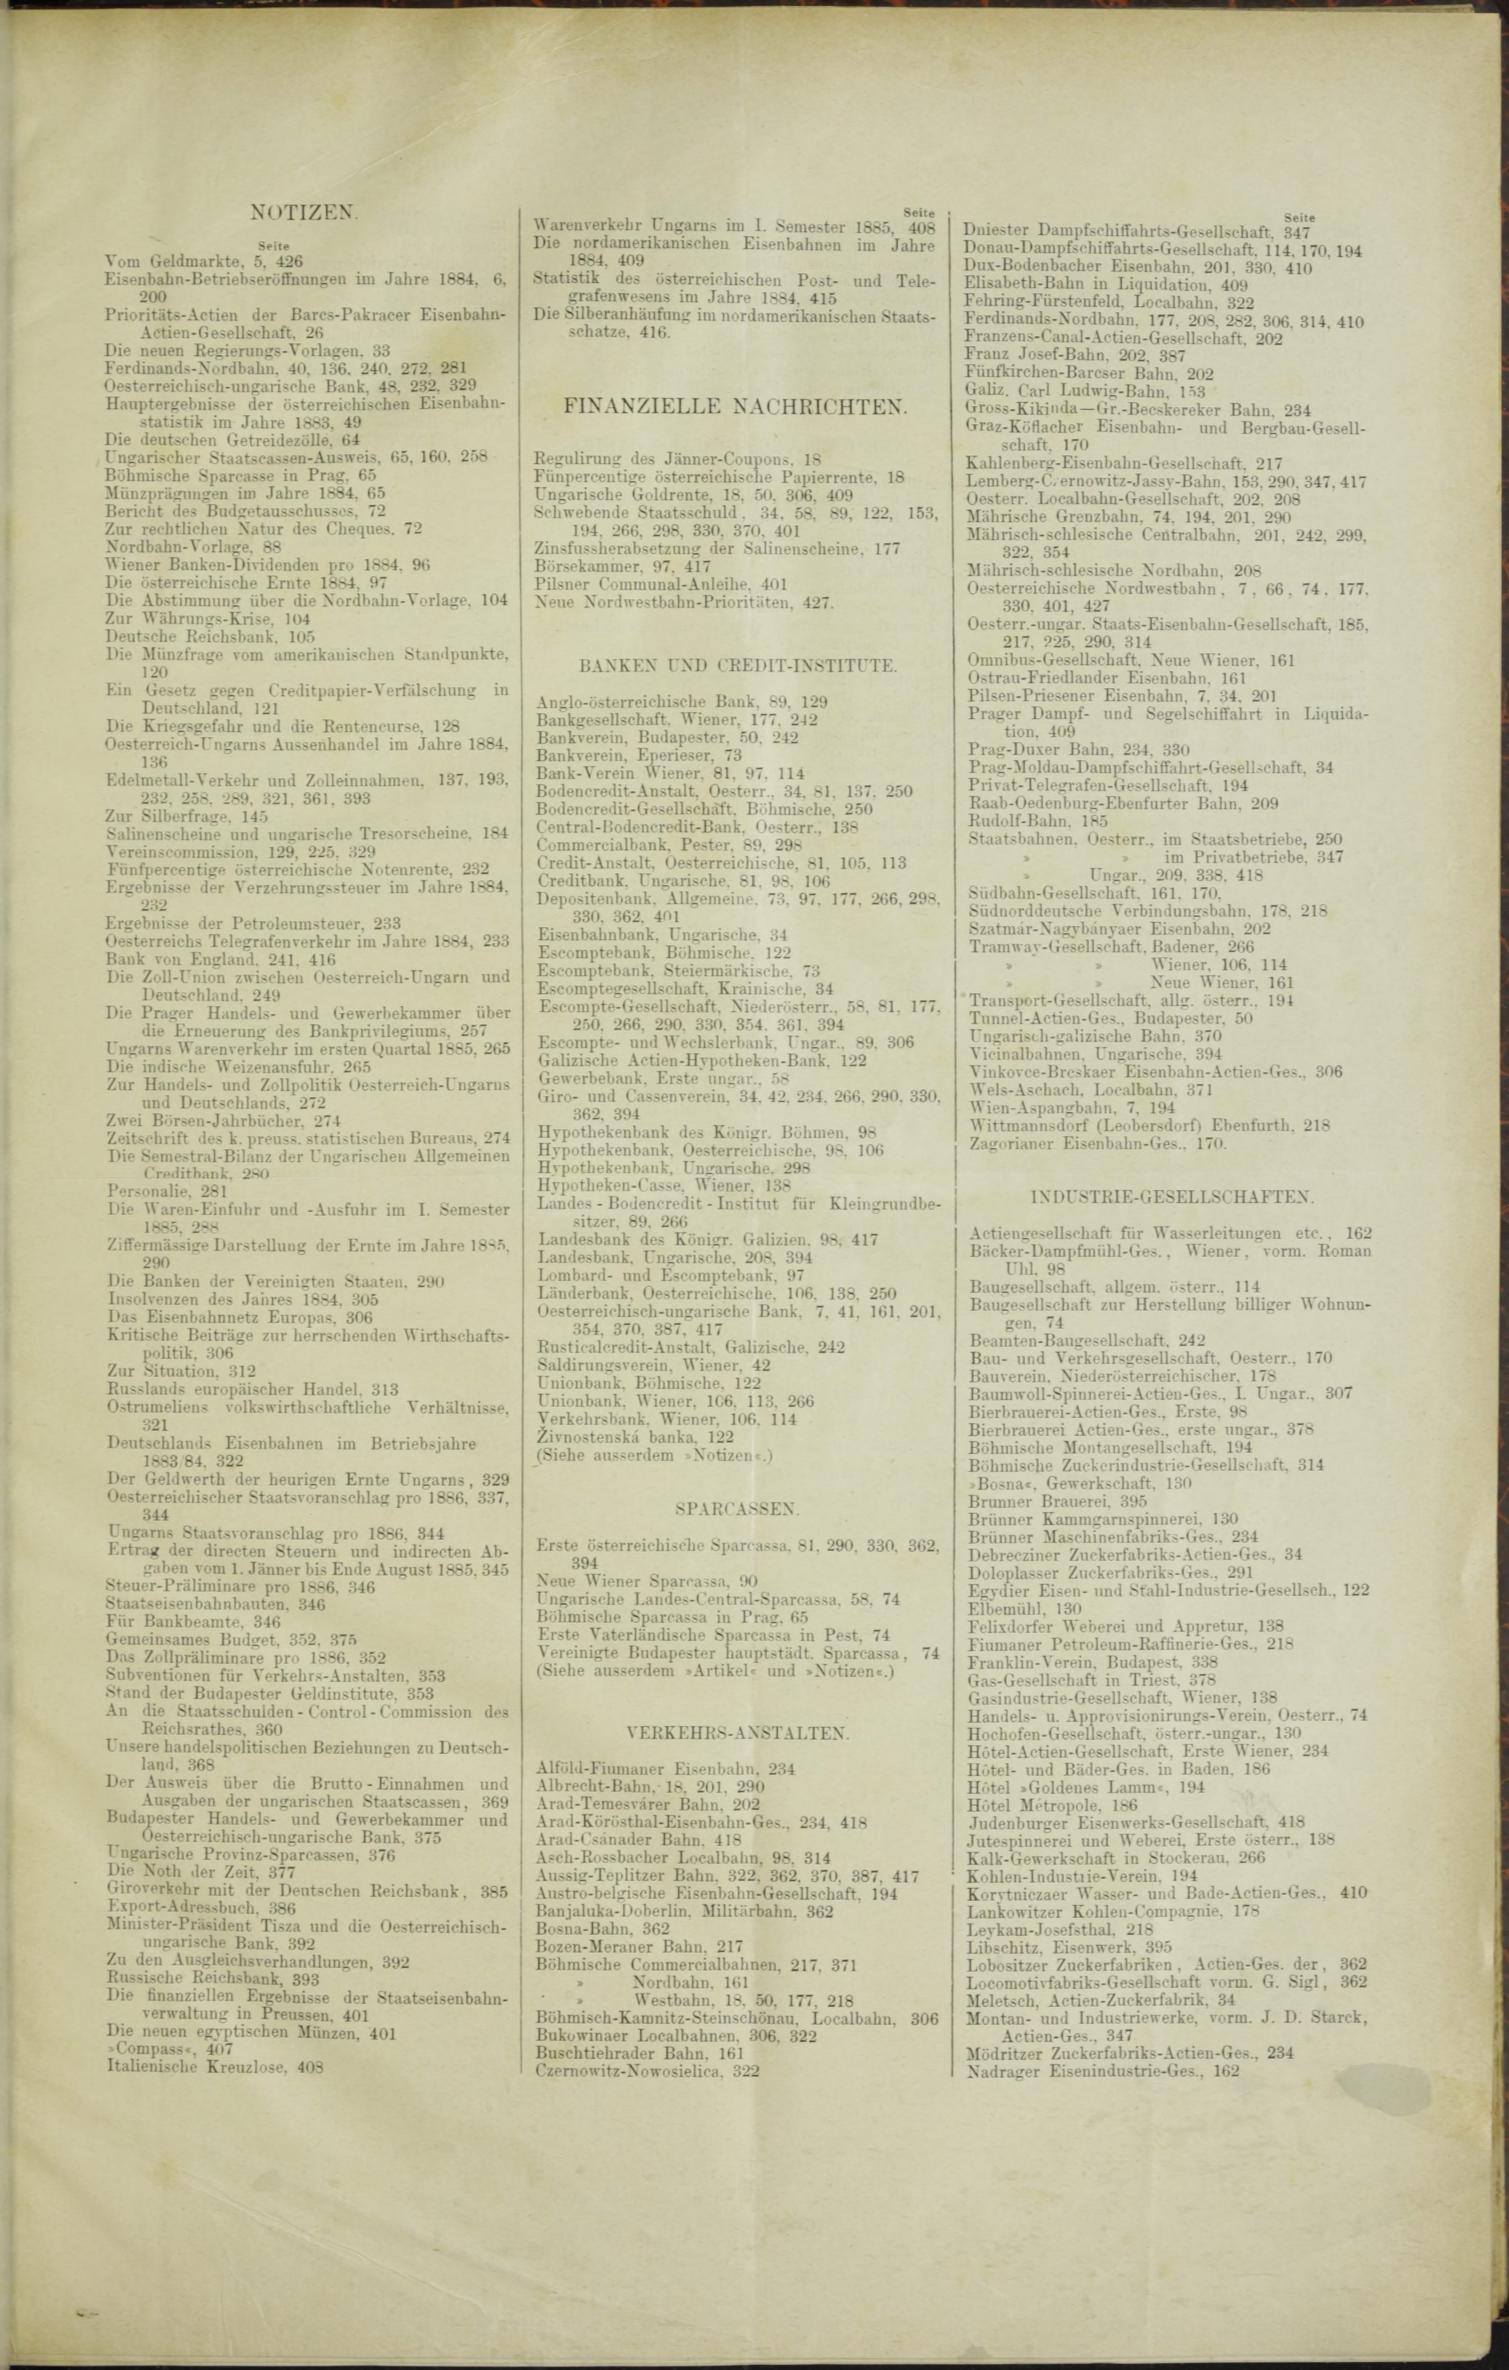 Der Tresor 26.11.1885 - Seite 11